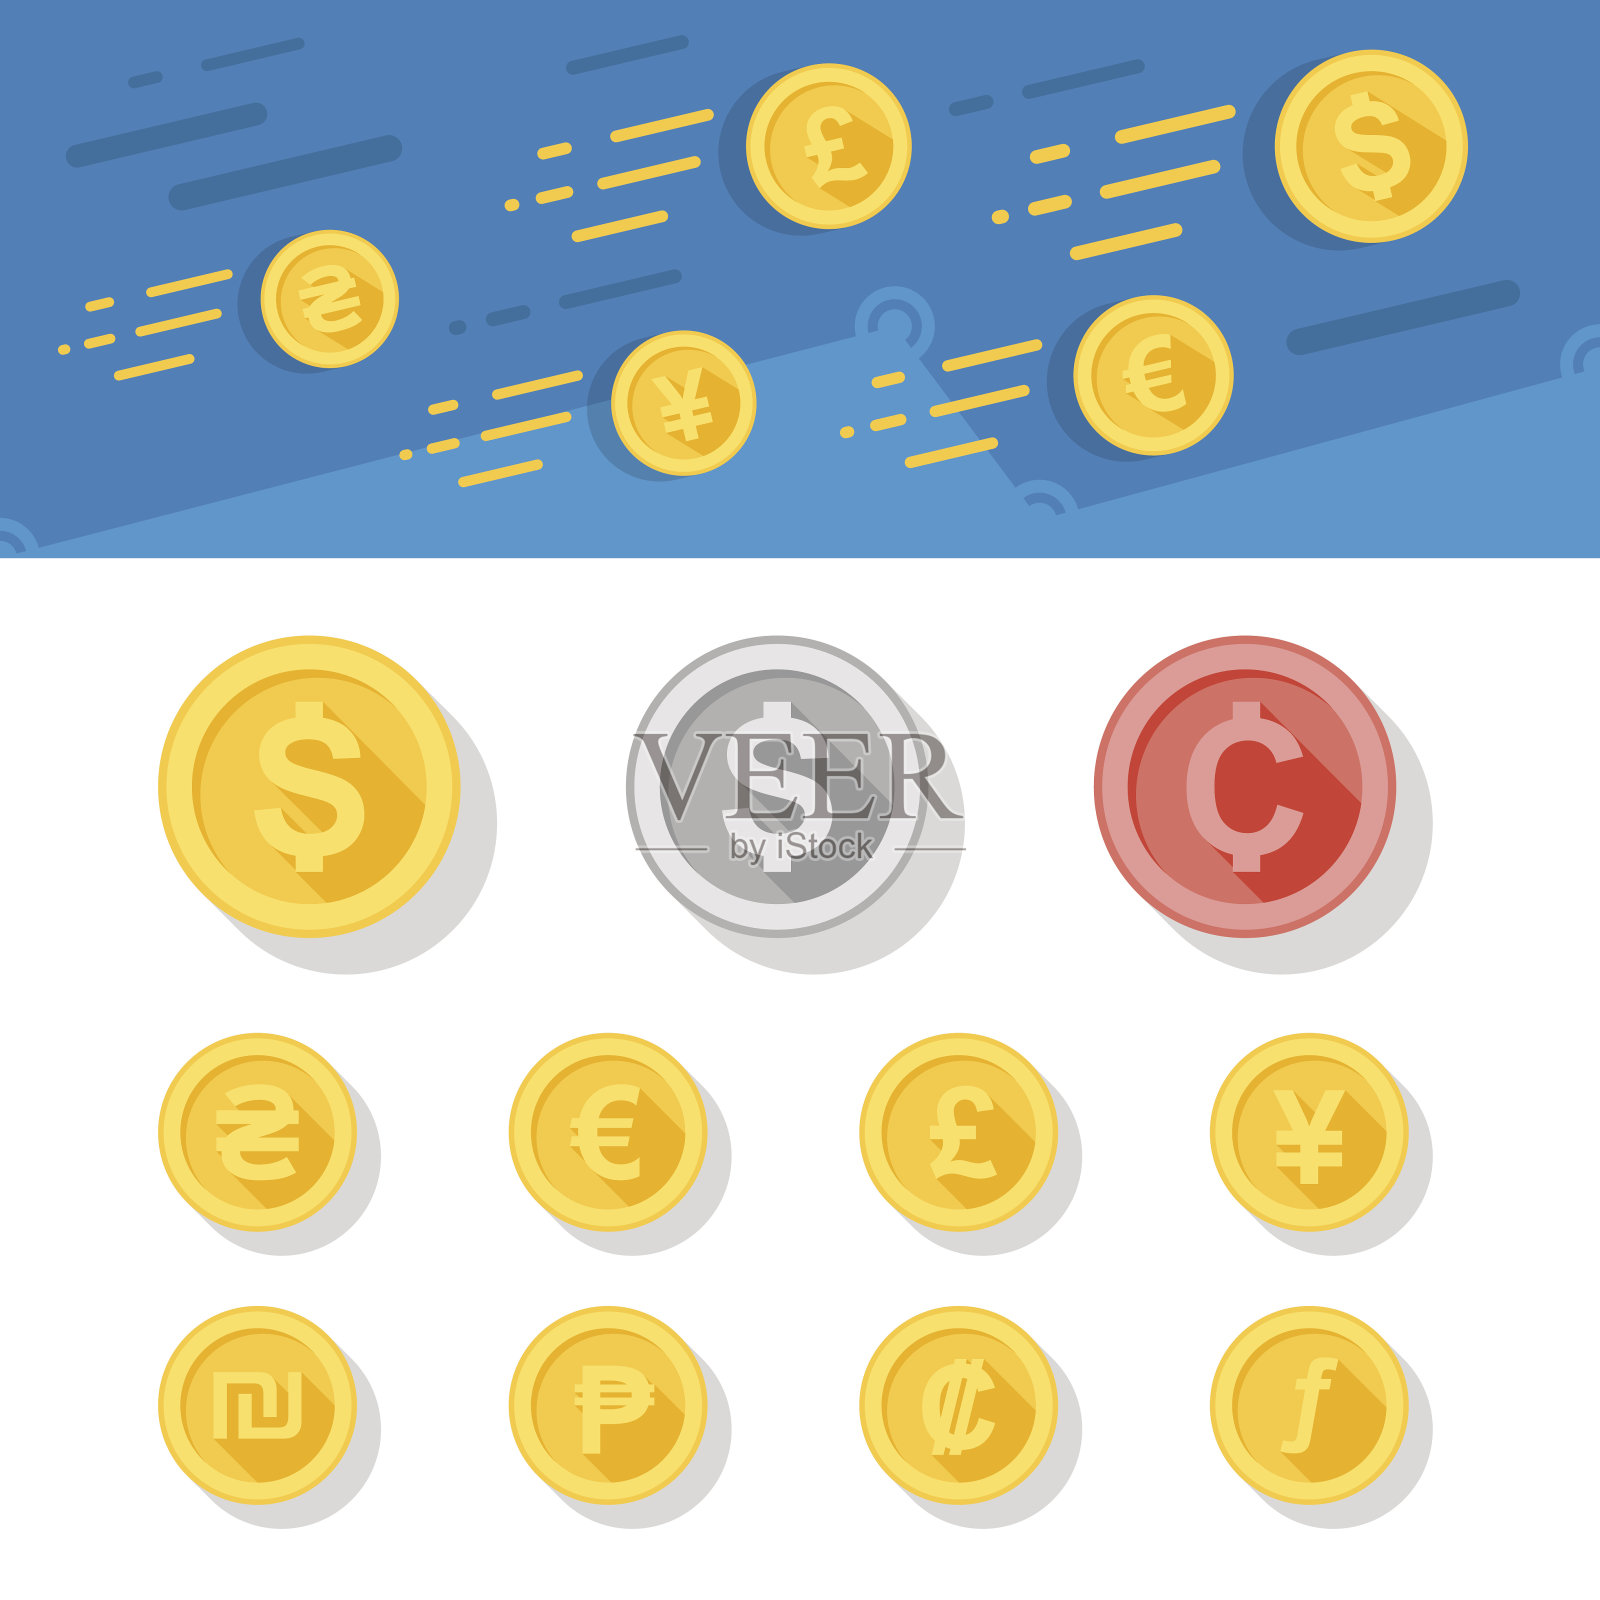 不同货币的扁平样式硬币。插画图片素材